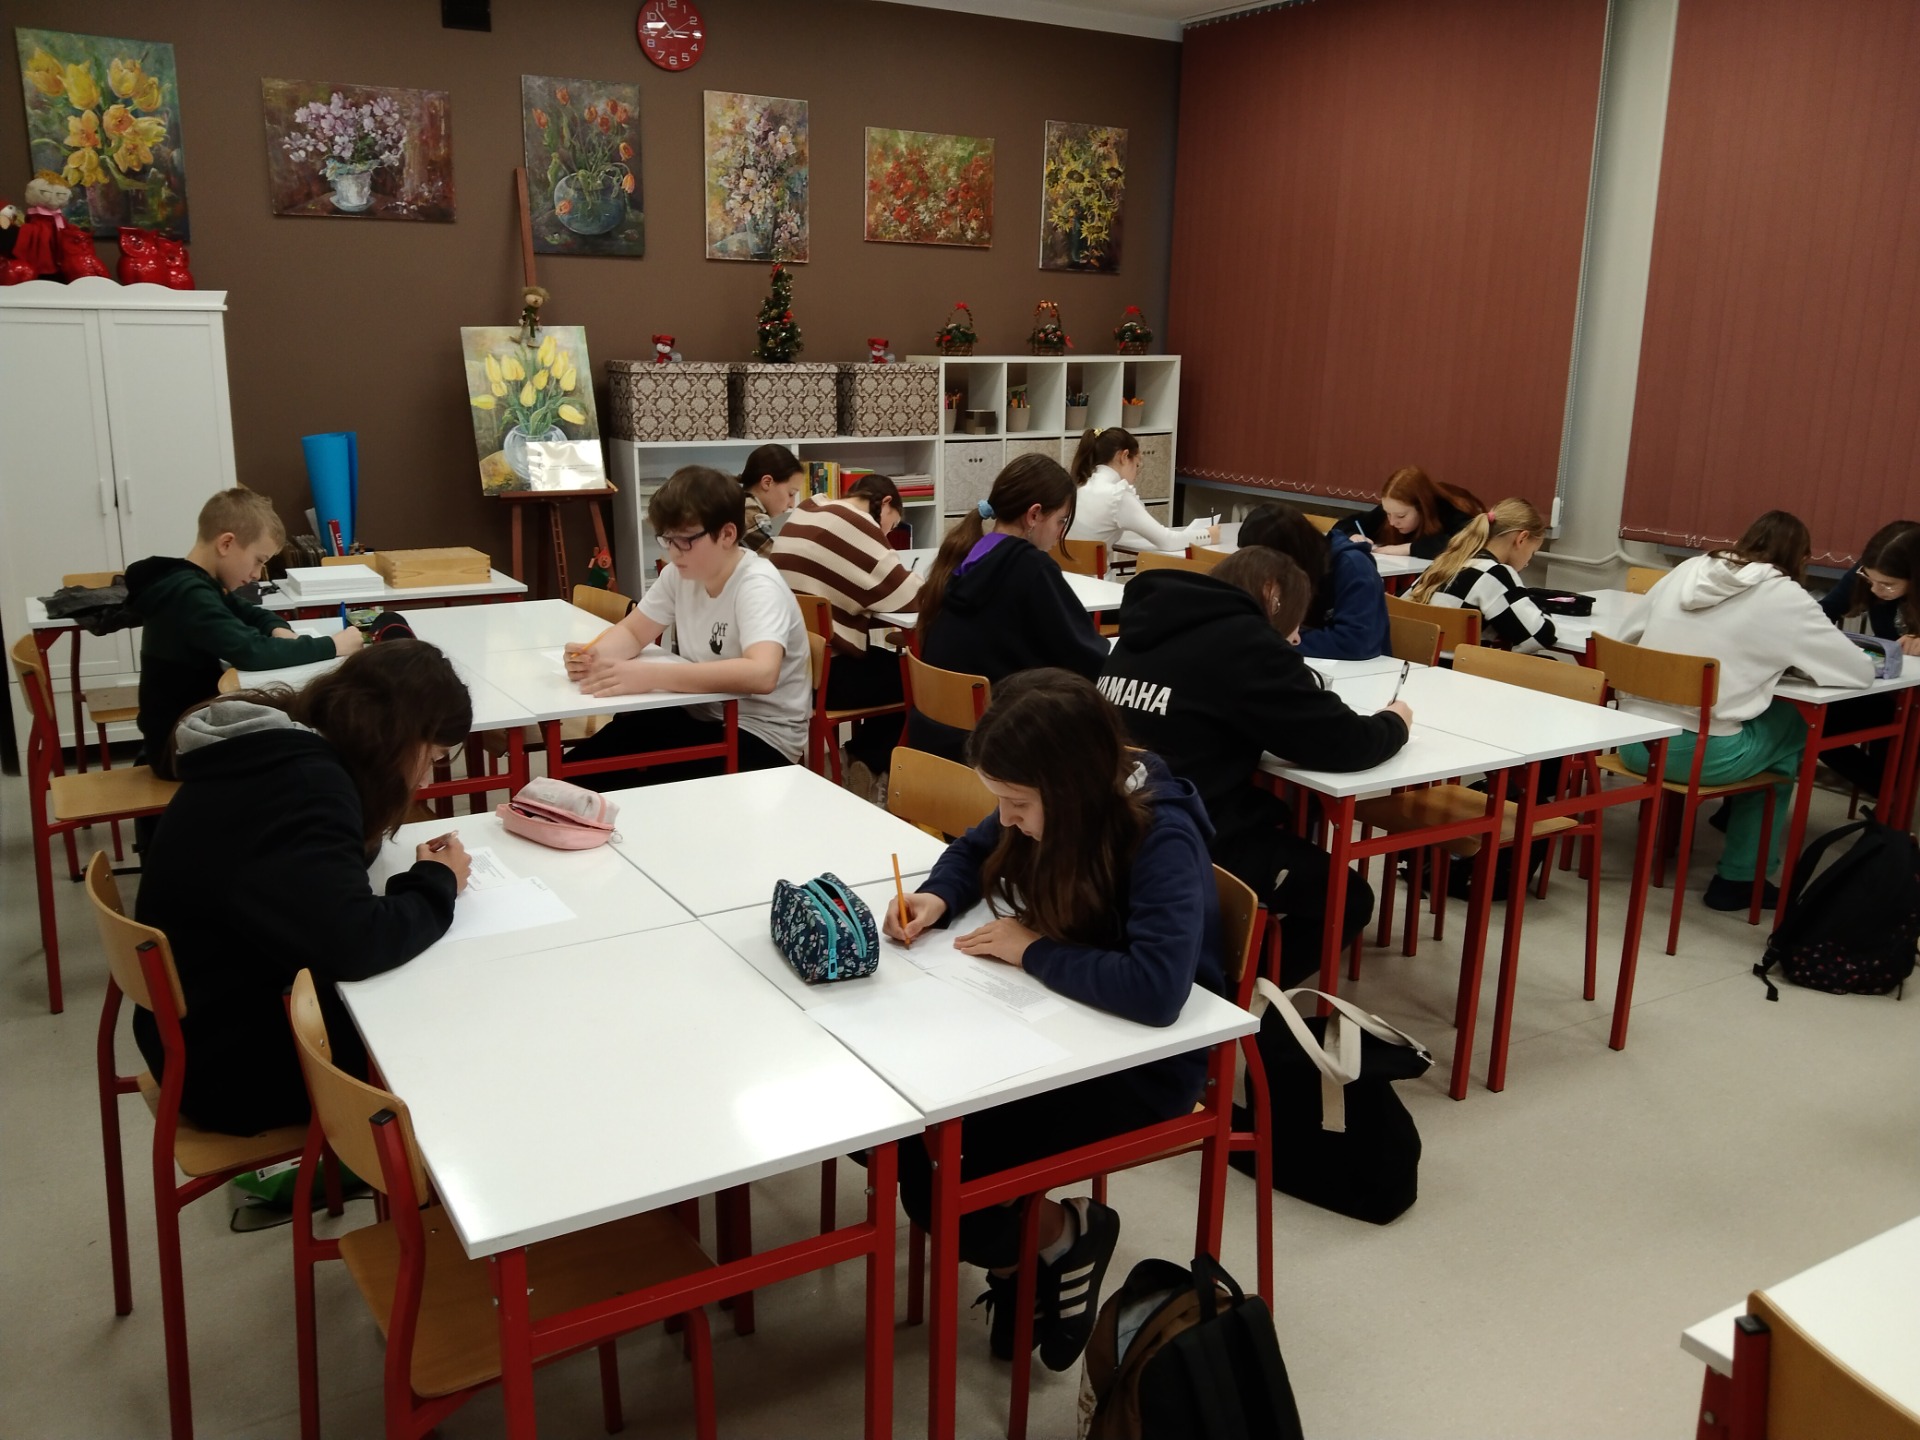 zdjęcie przedstawia uczniów, którzy siedzą przy ławkach i piszą prace literackie na kartkach